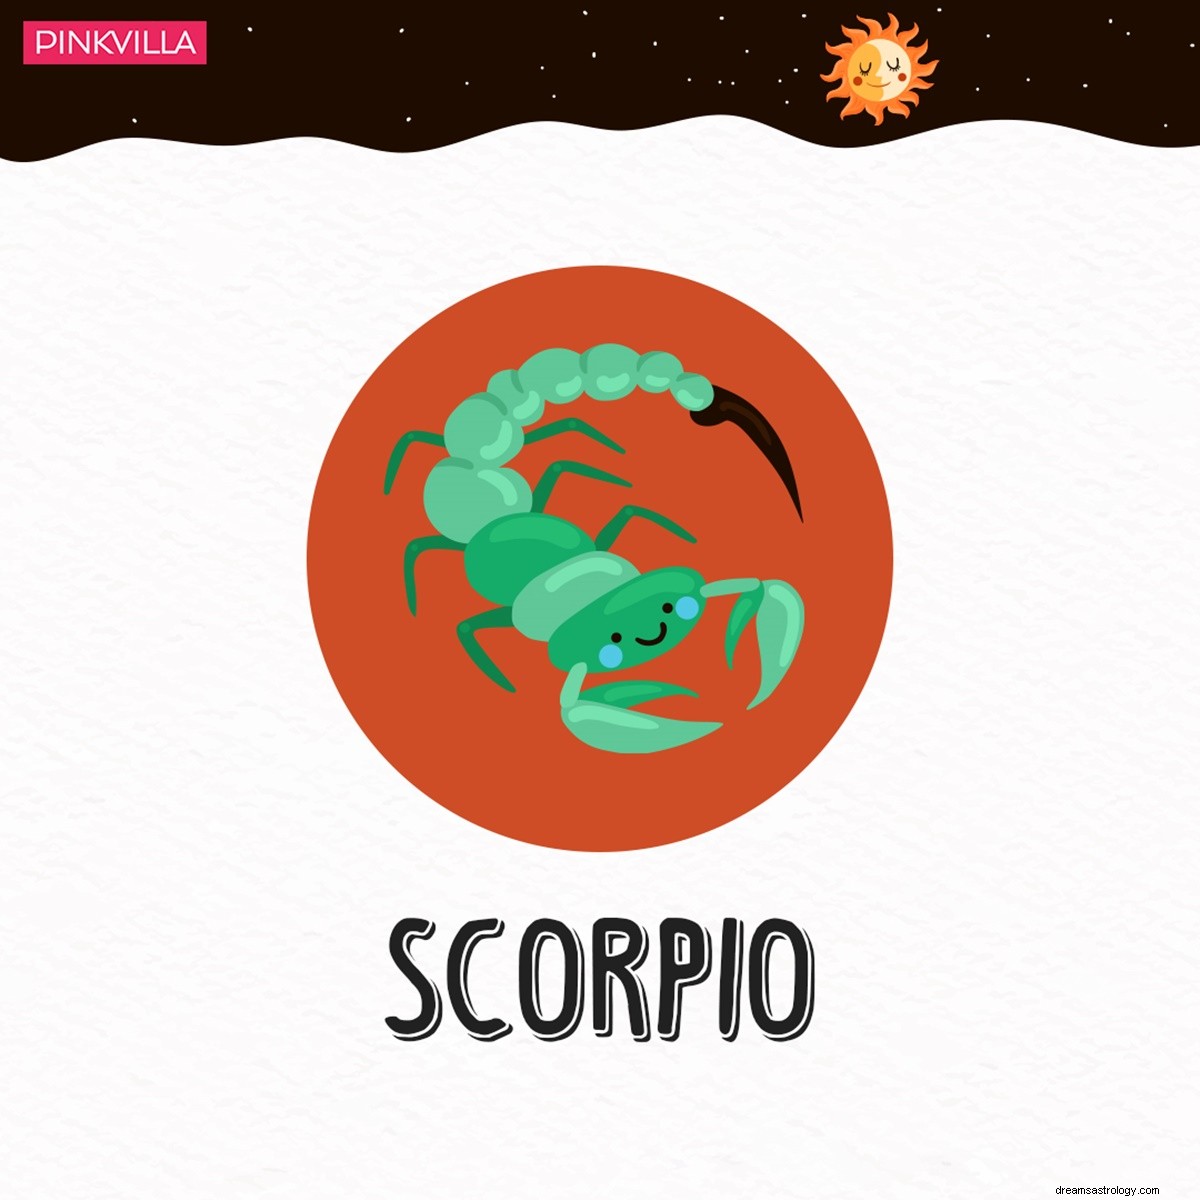 Umawiaj się z pomysłami, aby zainteresować swojego tajemniczego partnera Scorpio 